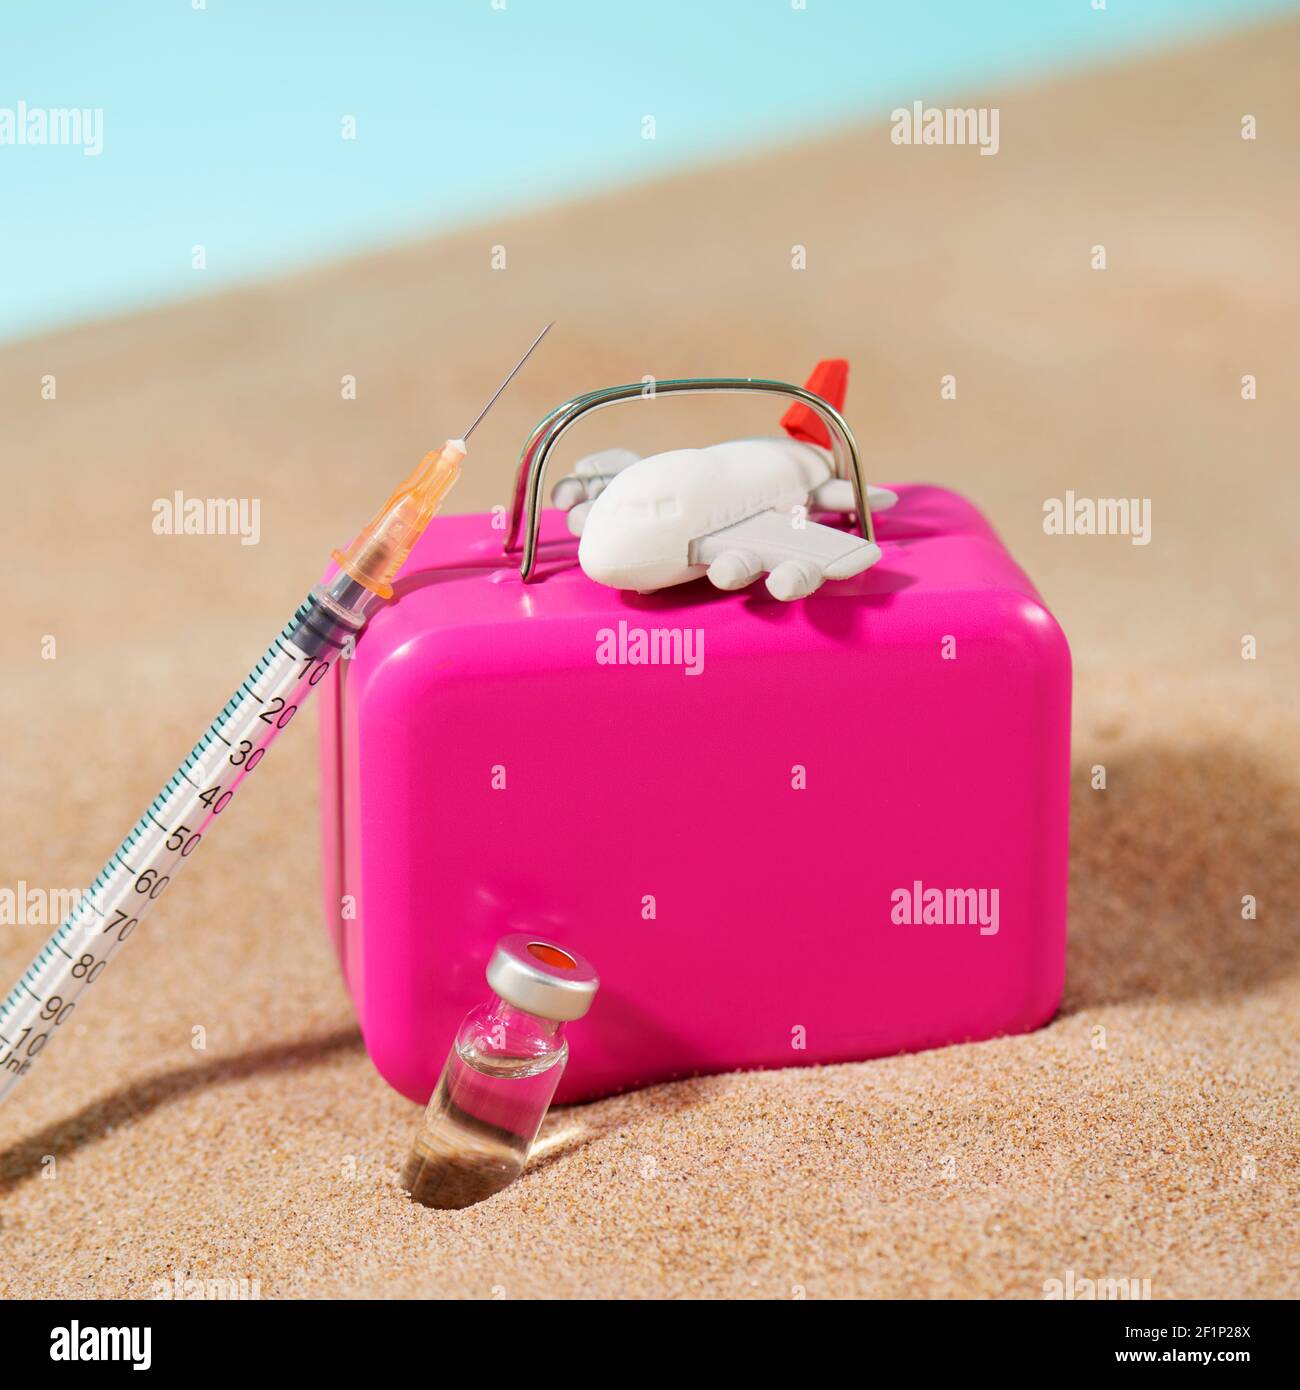 un flacon, une seringue, une valise rose et un avion sur le sable, sur fond bleu, représentant le tourisme médical Banque D'Images